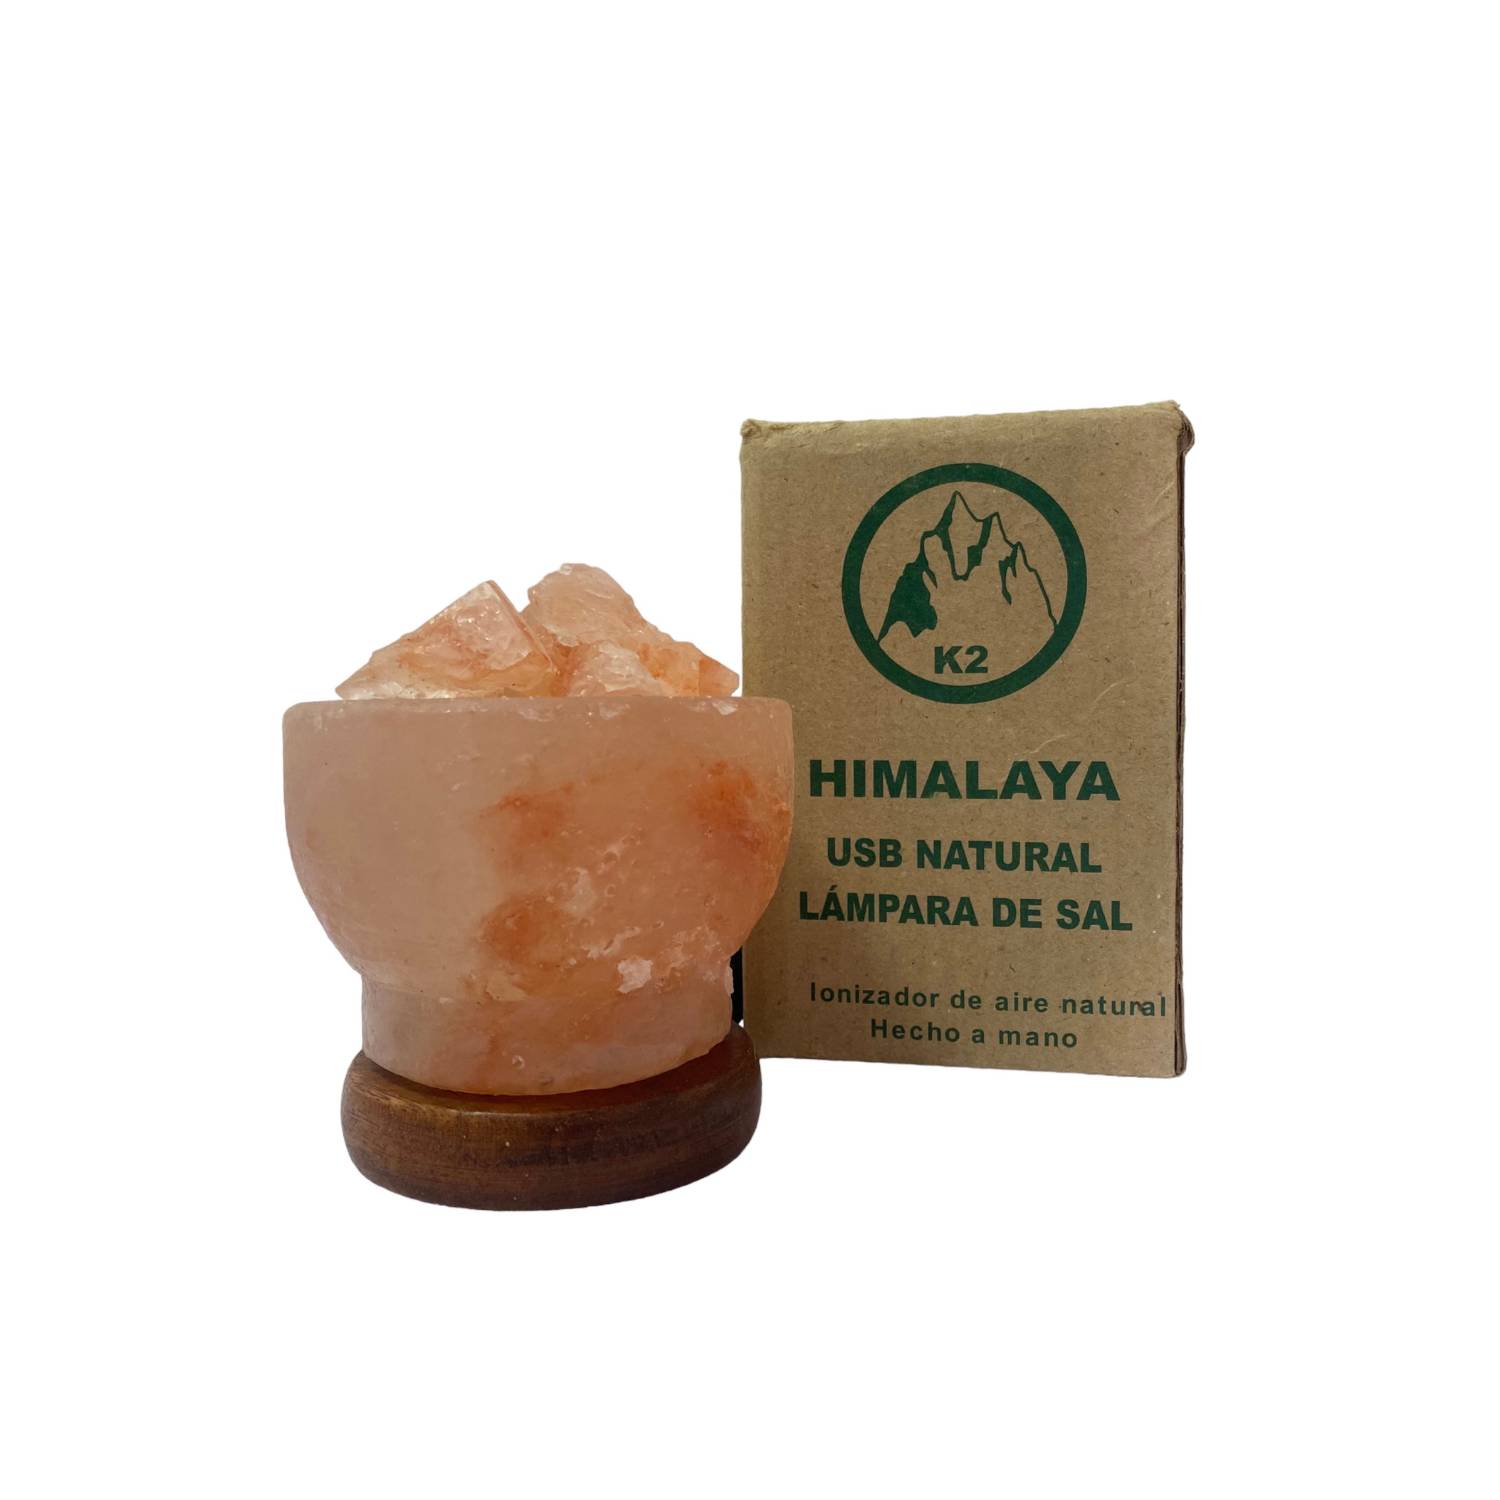 Venta online y en tienda de lámpara de Sal del Himalaya USB.